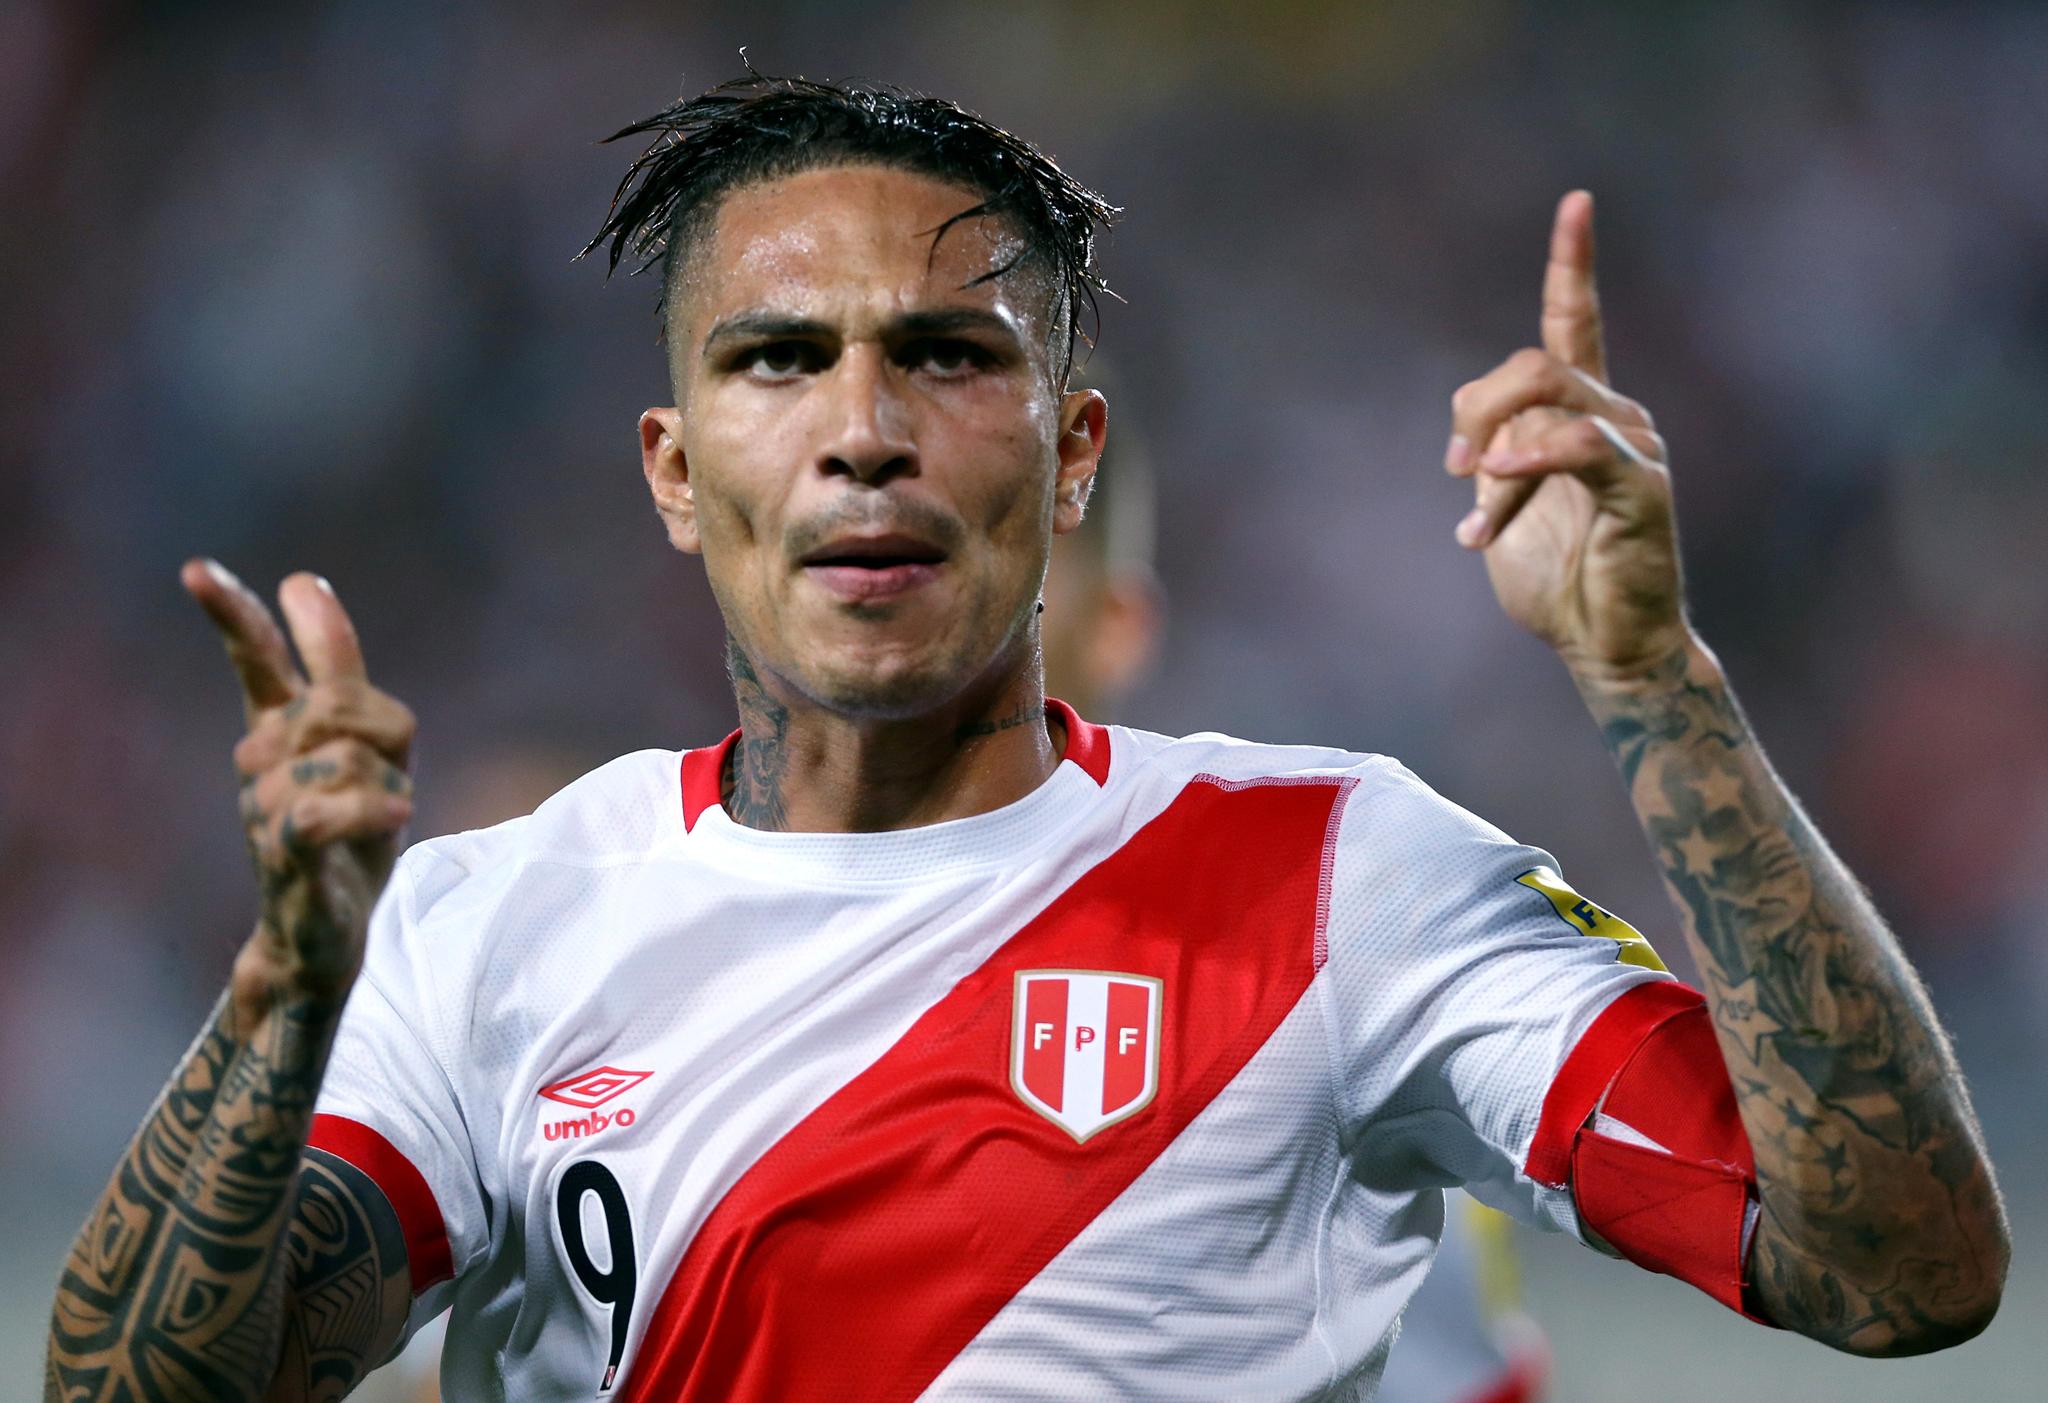 FREM OG TILBAKE: Perus landslagsstjerne Paolo Guerrero får spille fotball-VM etter mye trøbbel. Der skal han blant annet møte Danmark og Åge Hareide.